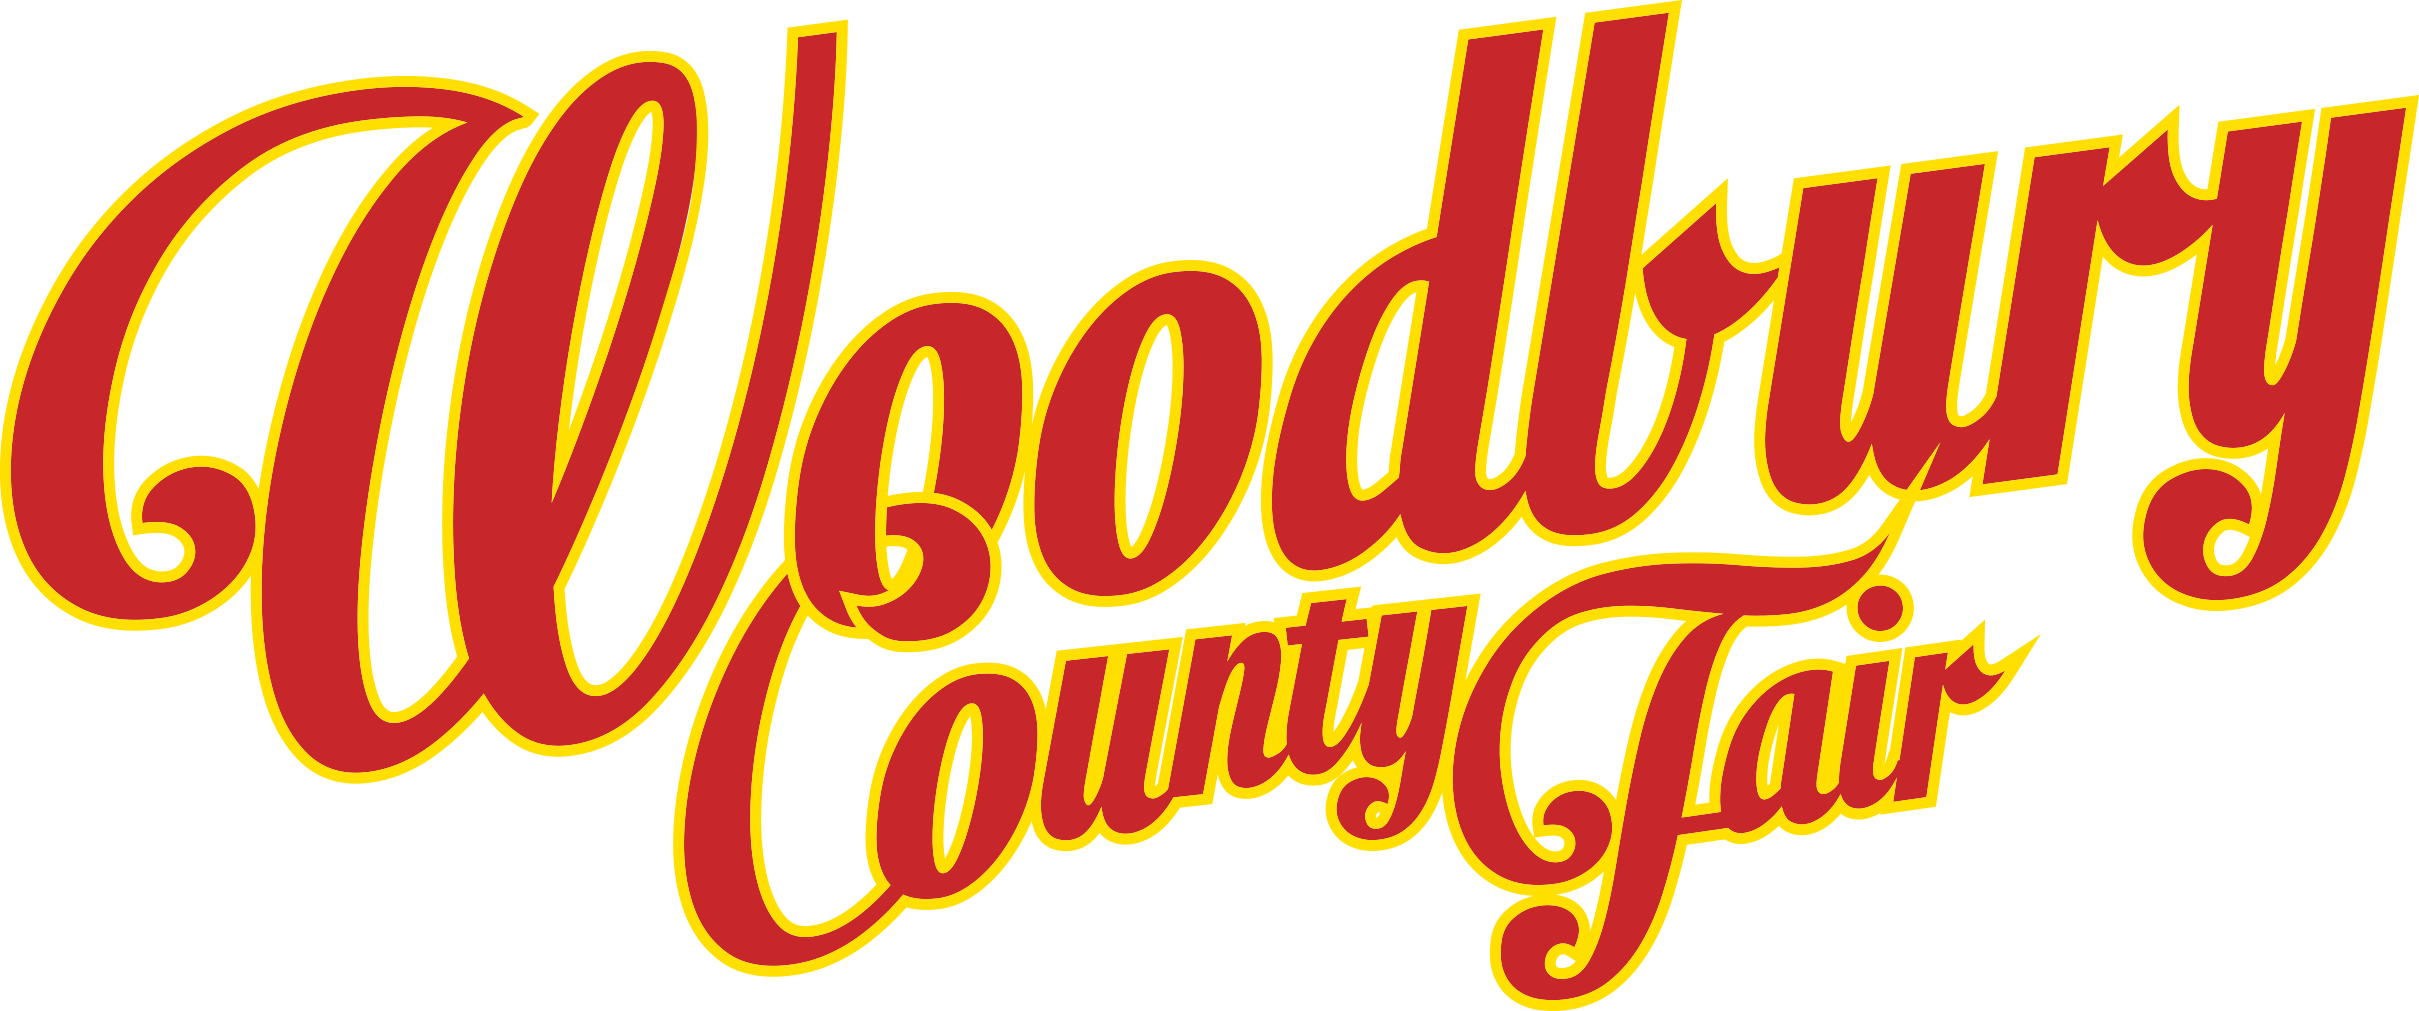 2016 Woodbury County Fair